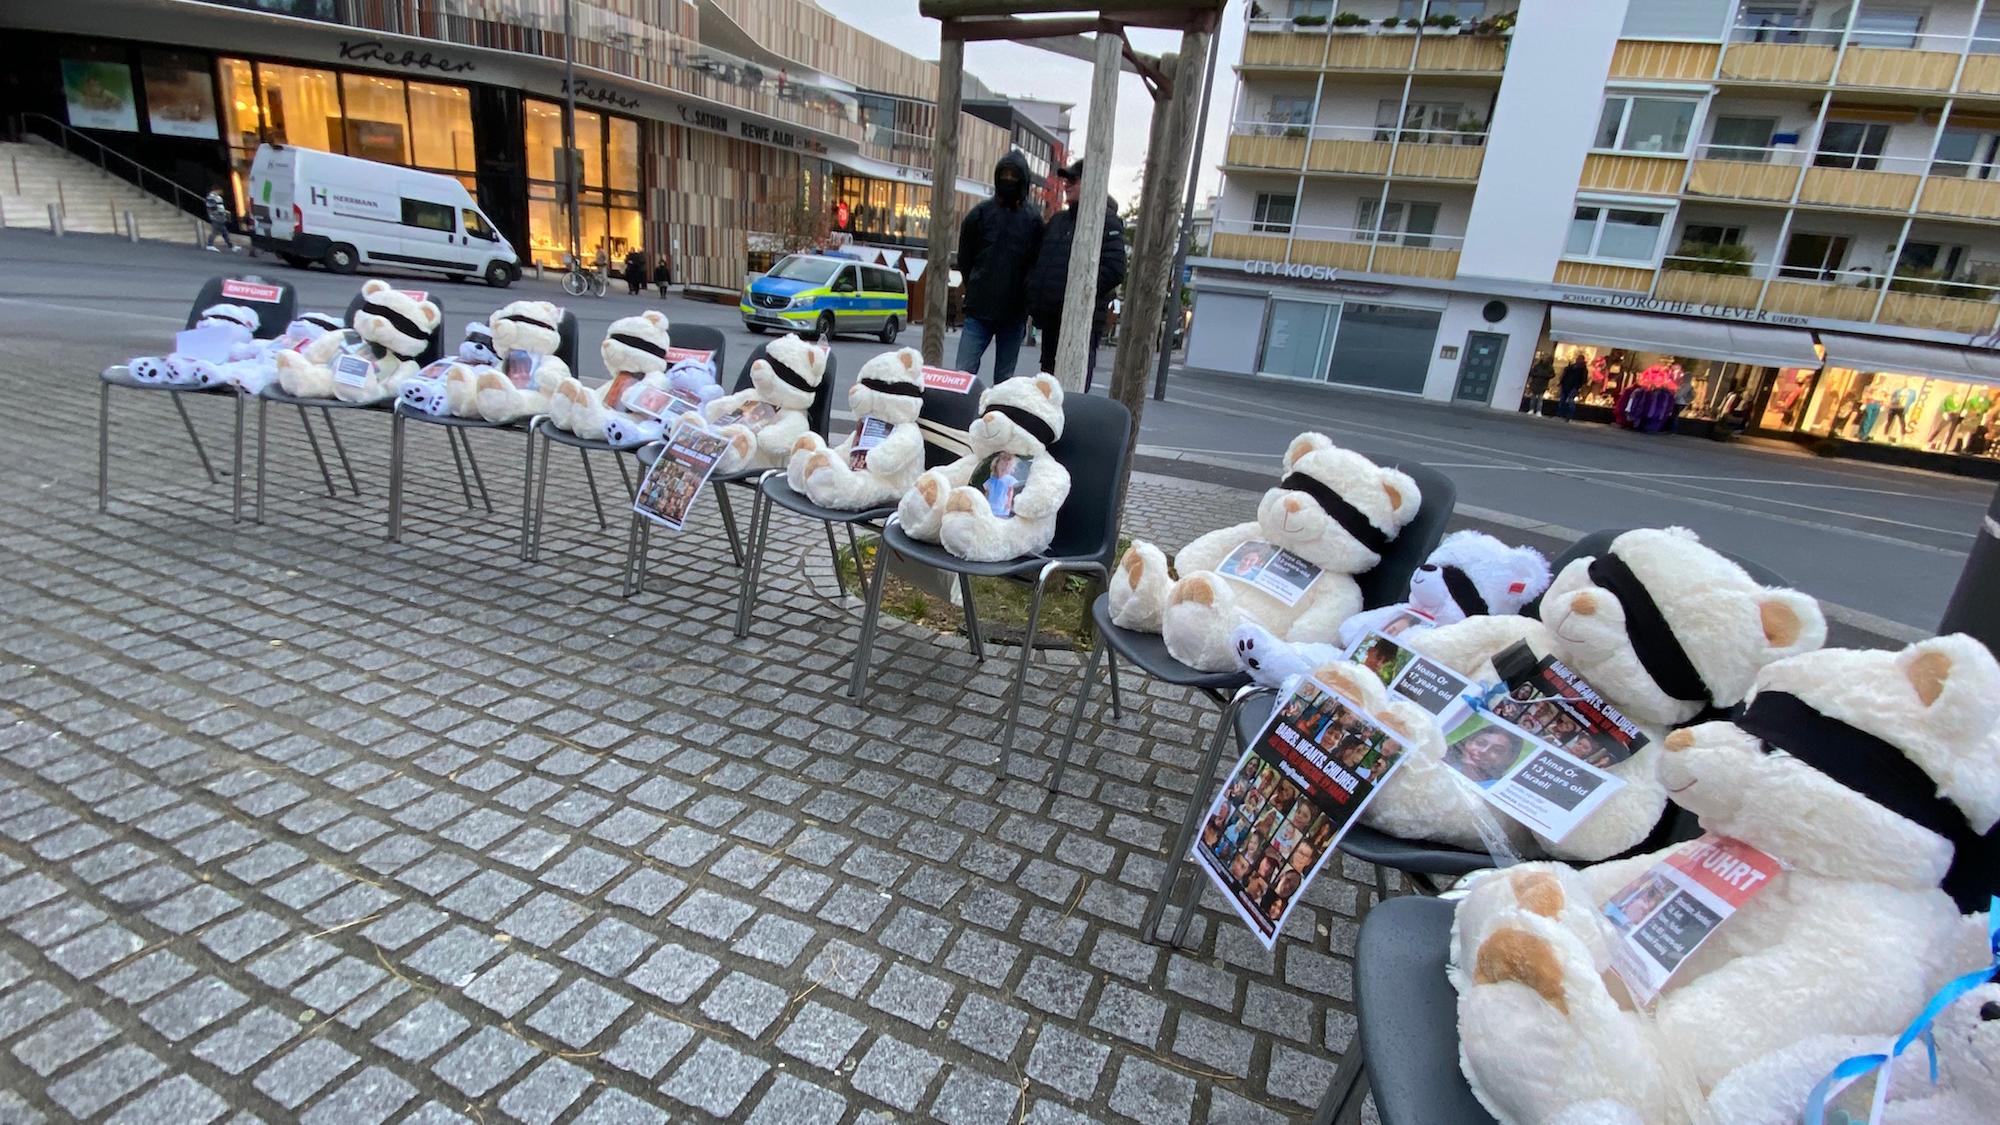 32 Teddybären mit verbundenen Augen stehen für die von der Hamas entführten Kinder. (c) Garnet Manecke